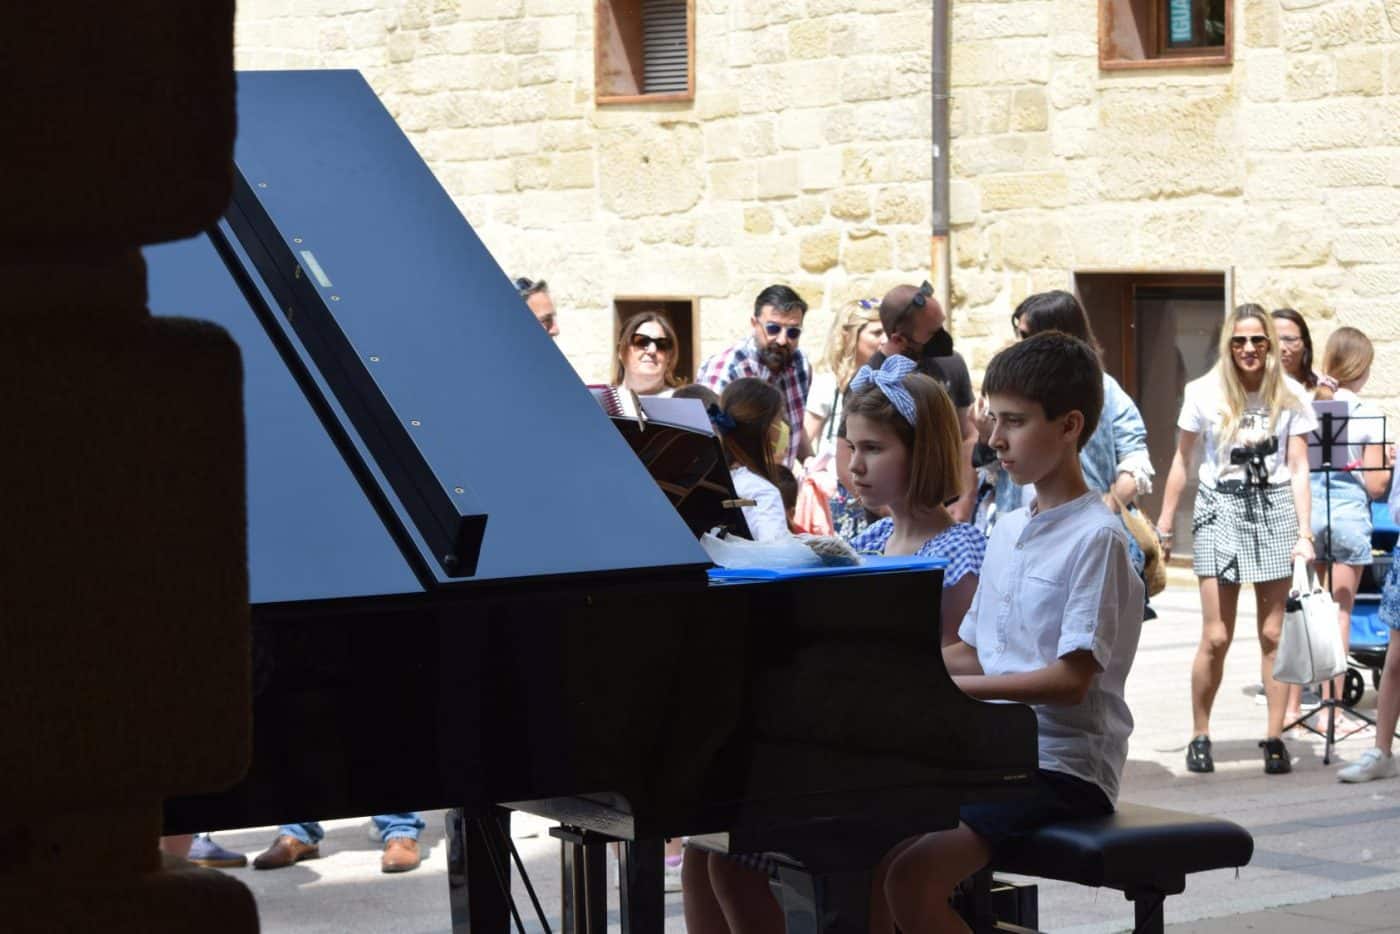 FOTOS: El Conservatorio Lucrecia Arana celebra el fin de curso sacando la música a la calle 21